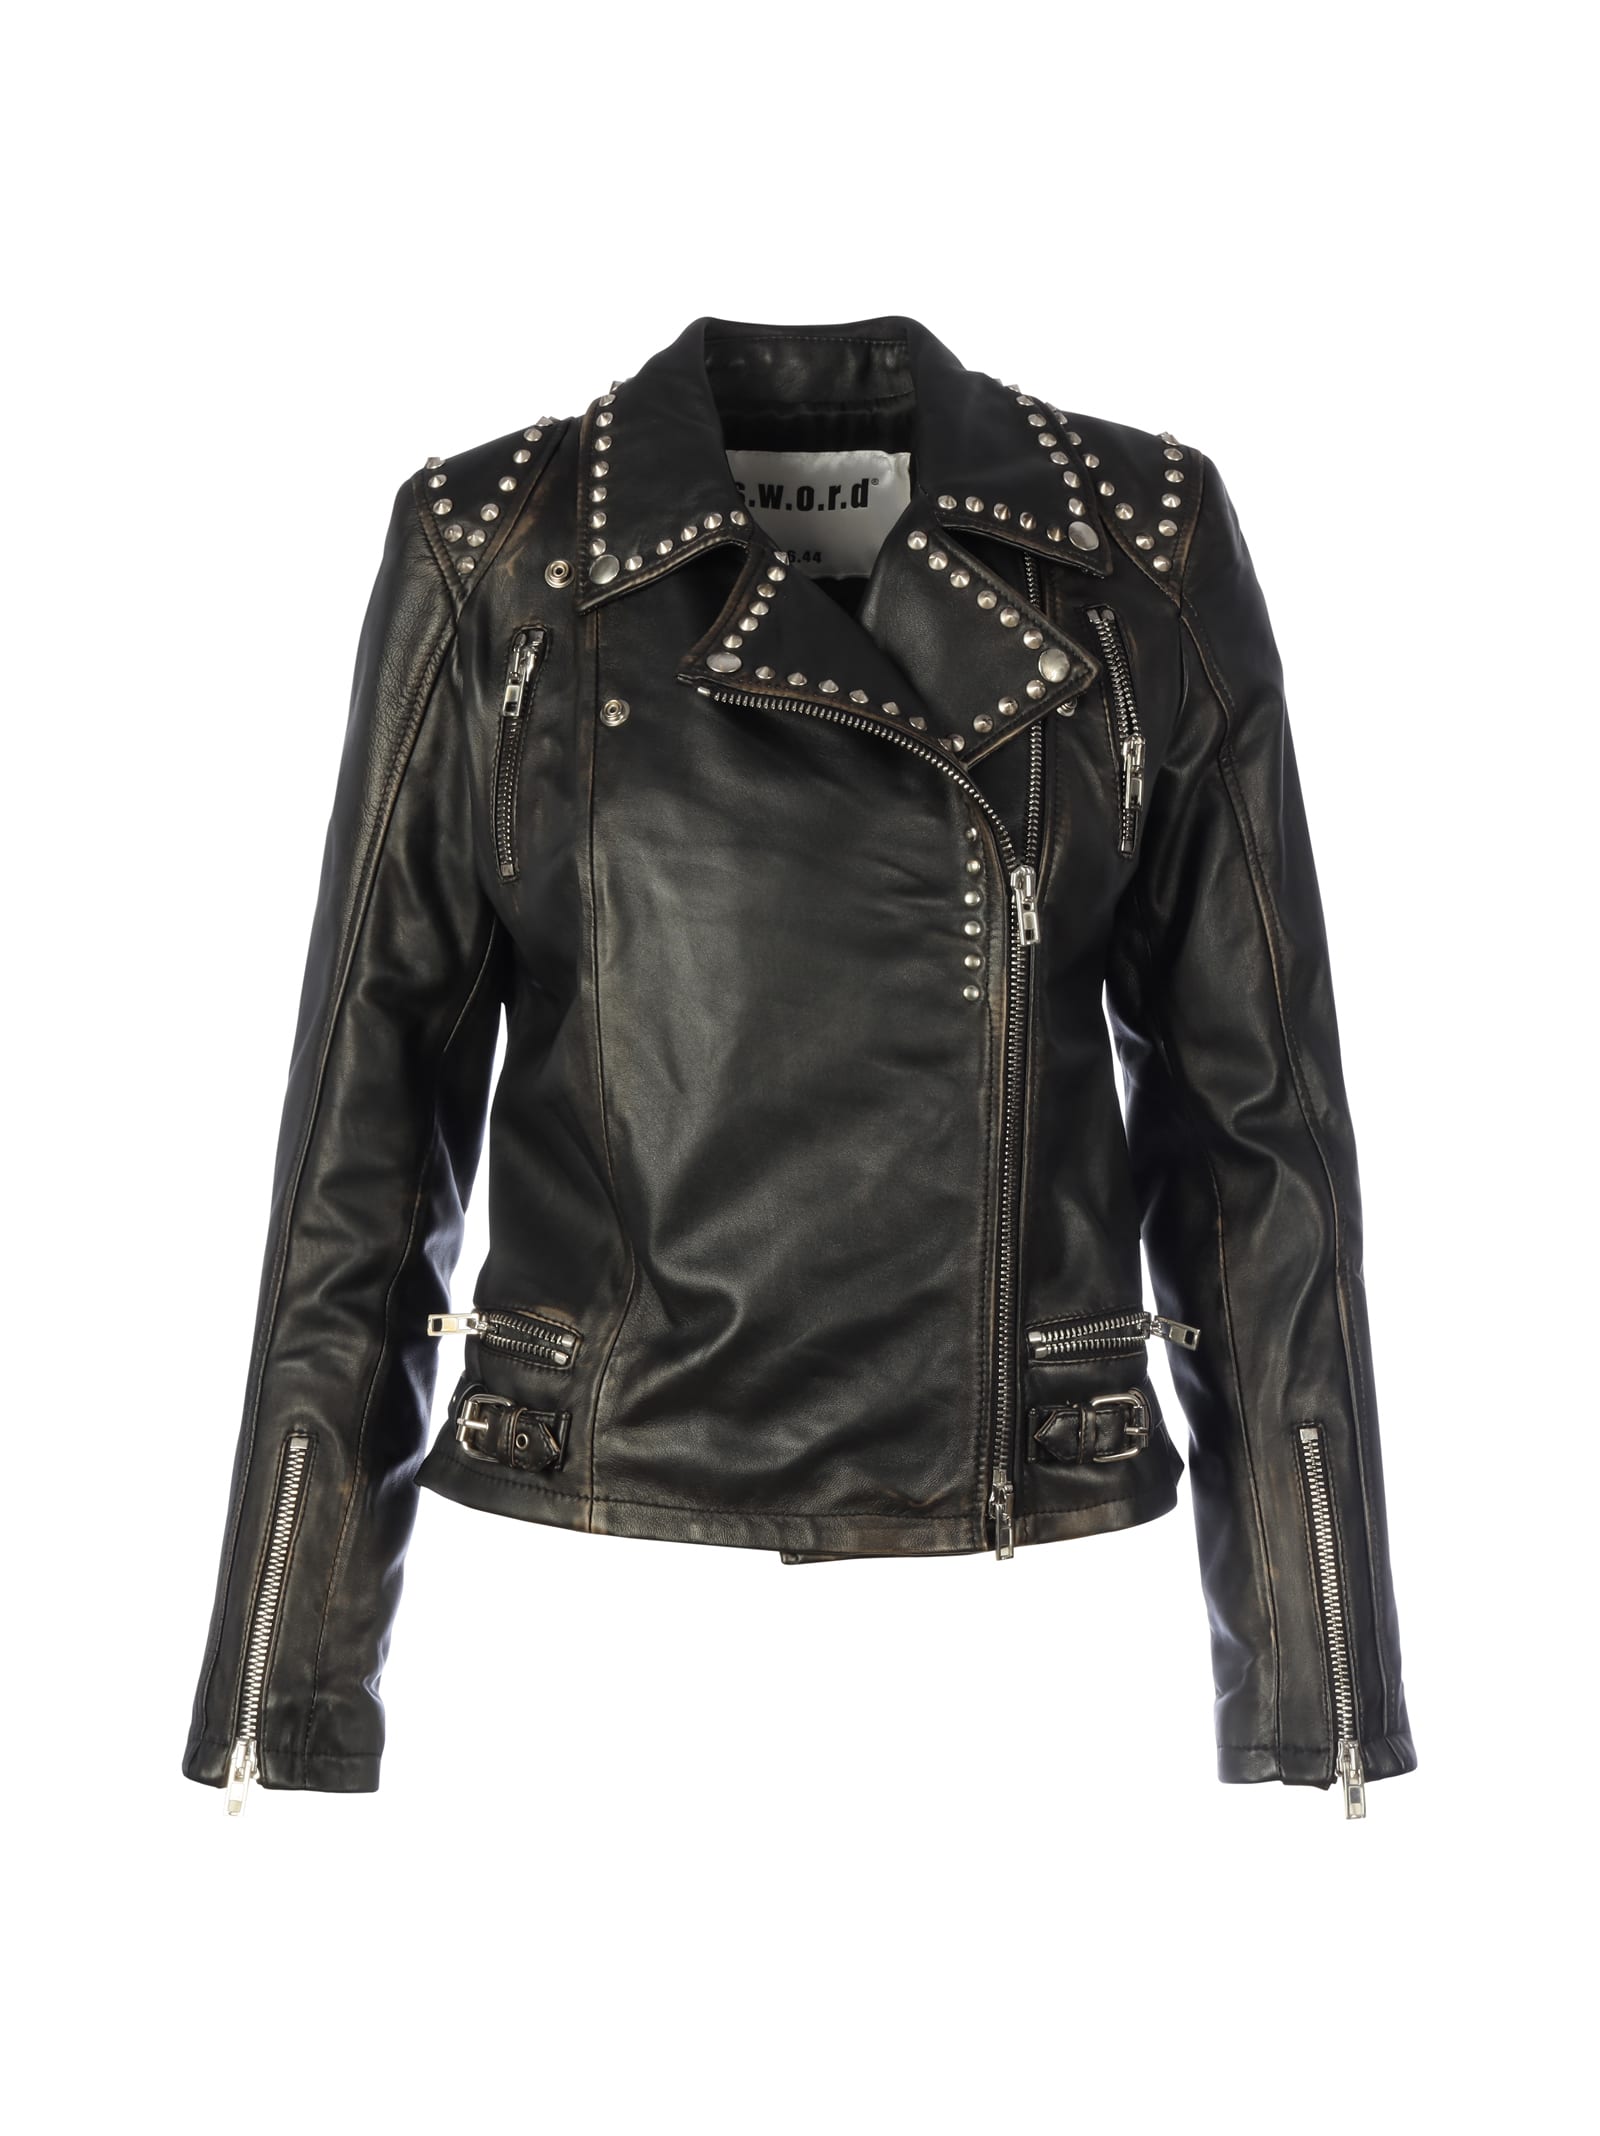 S.W.O.R.D 6.6.44S.W.O.R.D 6.6.44 Leather Studs Jacket | DailyMail